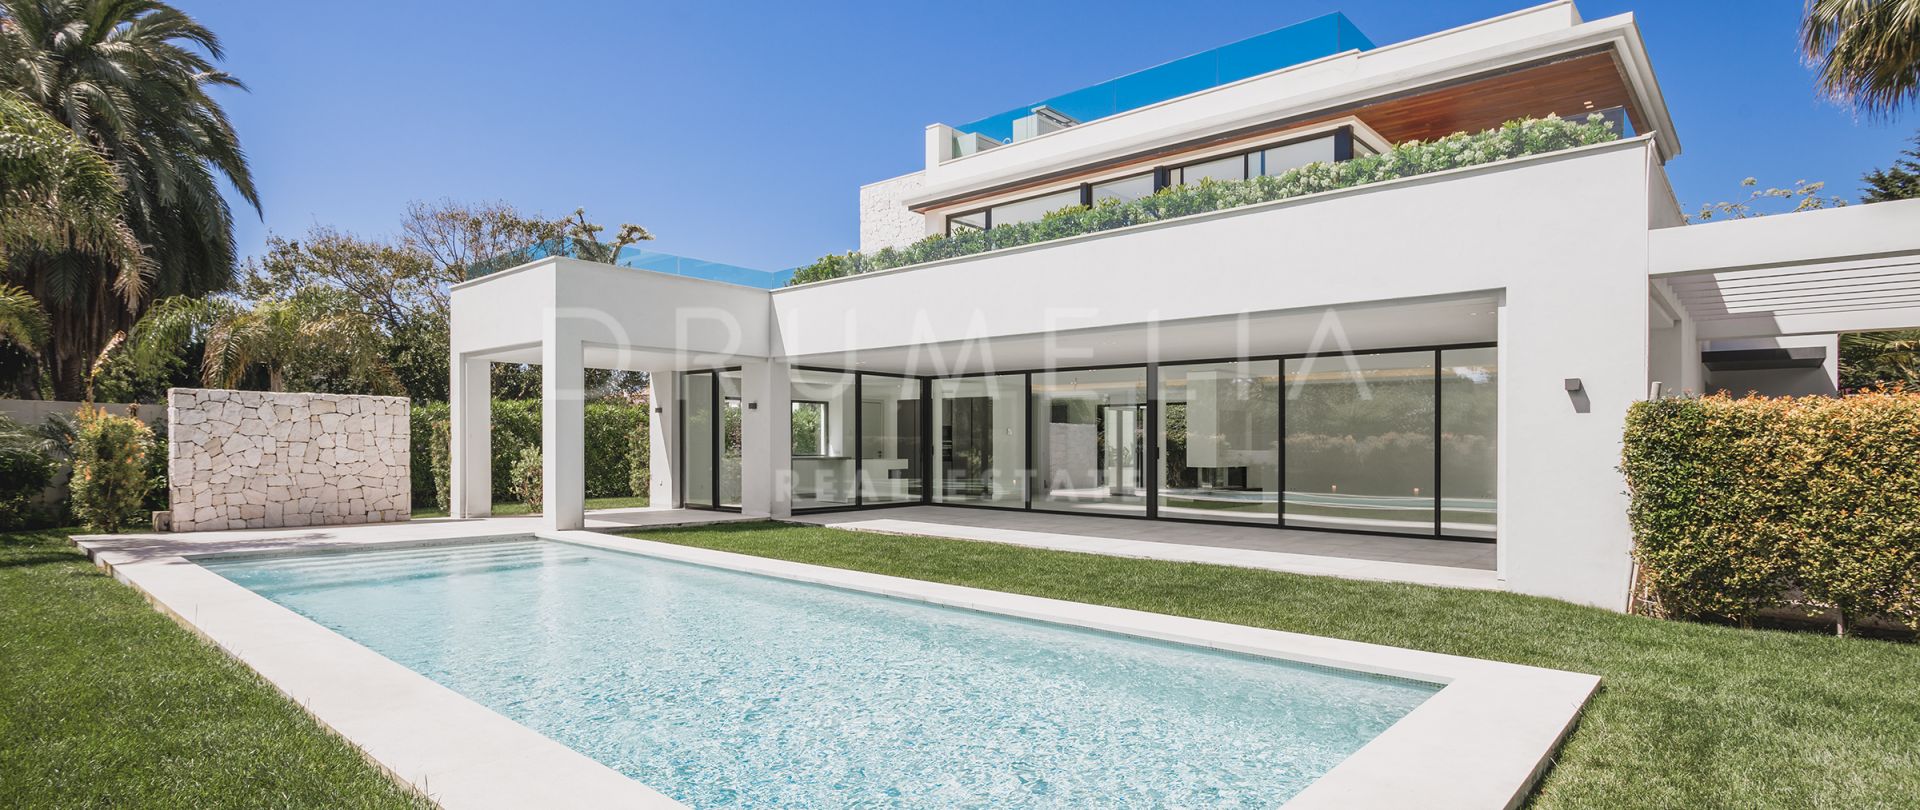 Neue luxuriöse Designer-Villa im minimalistischen Stil in Casasola am Meer, Estepona